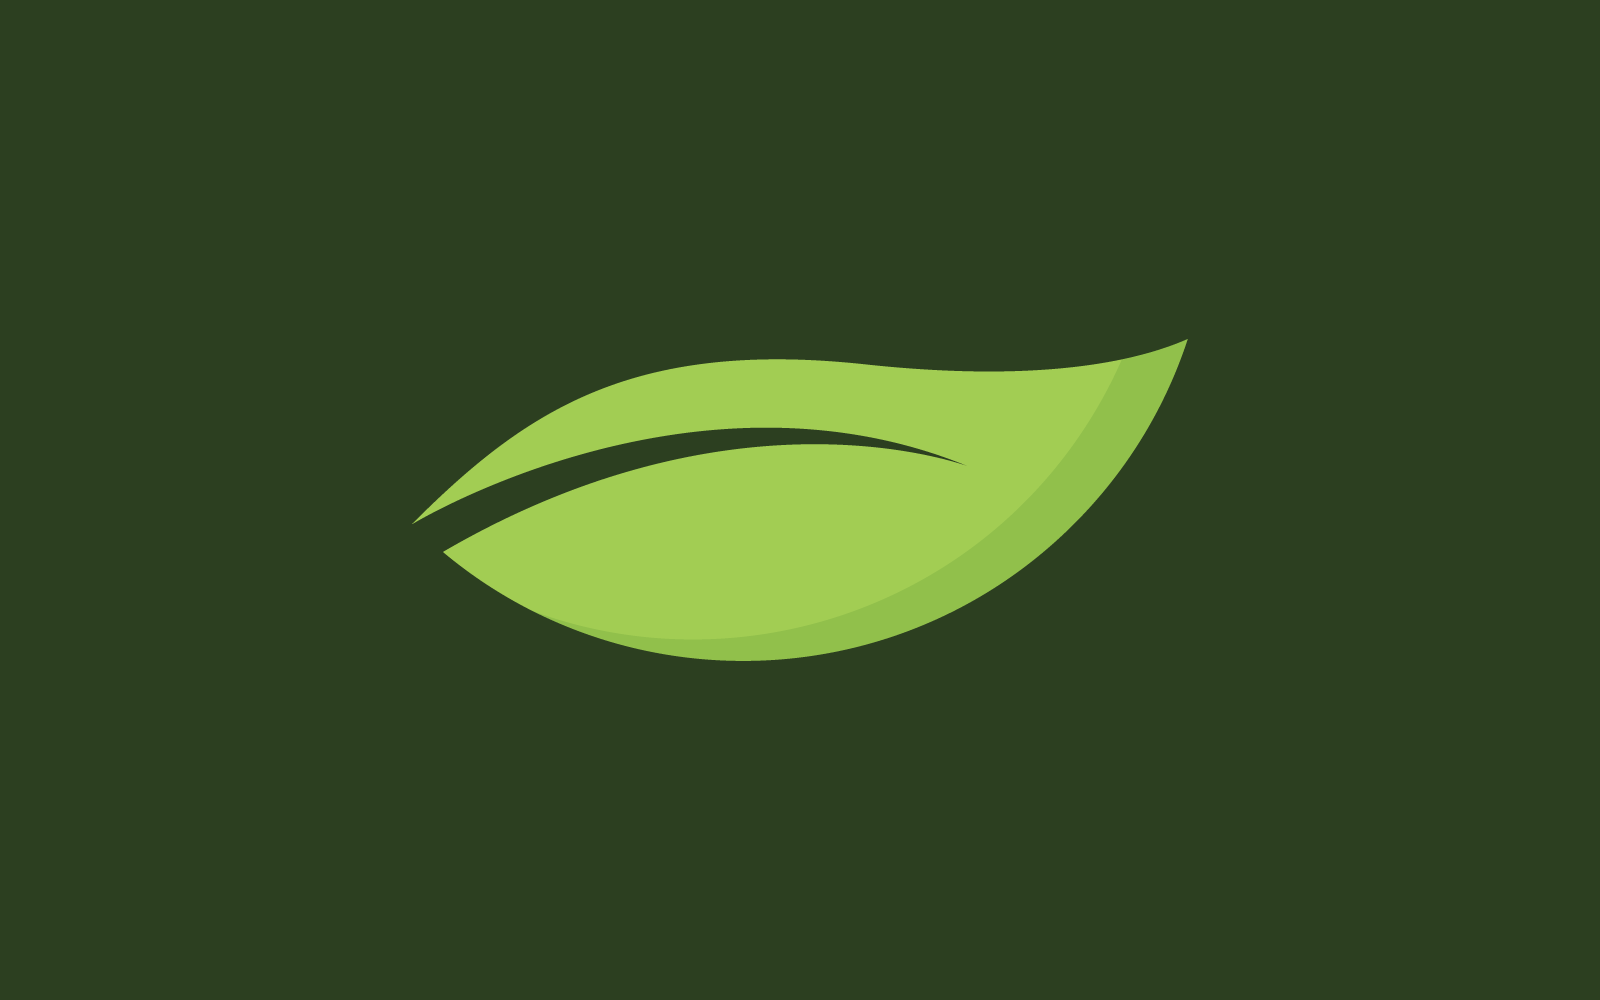 Green leaf illustration logo vector design